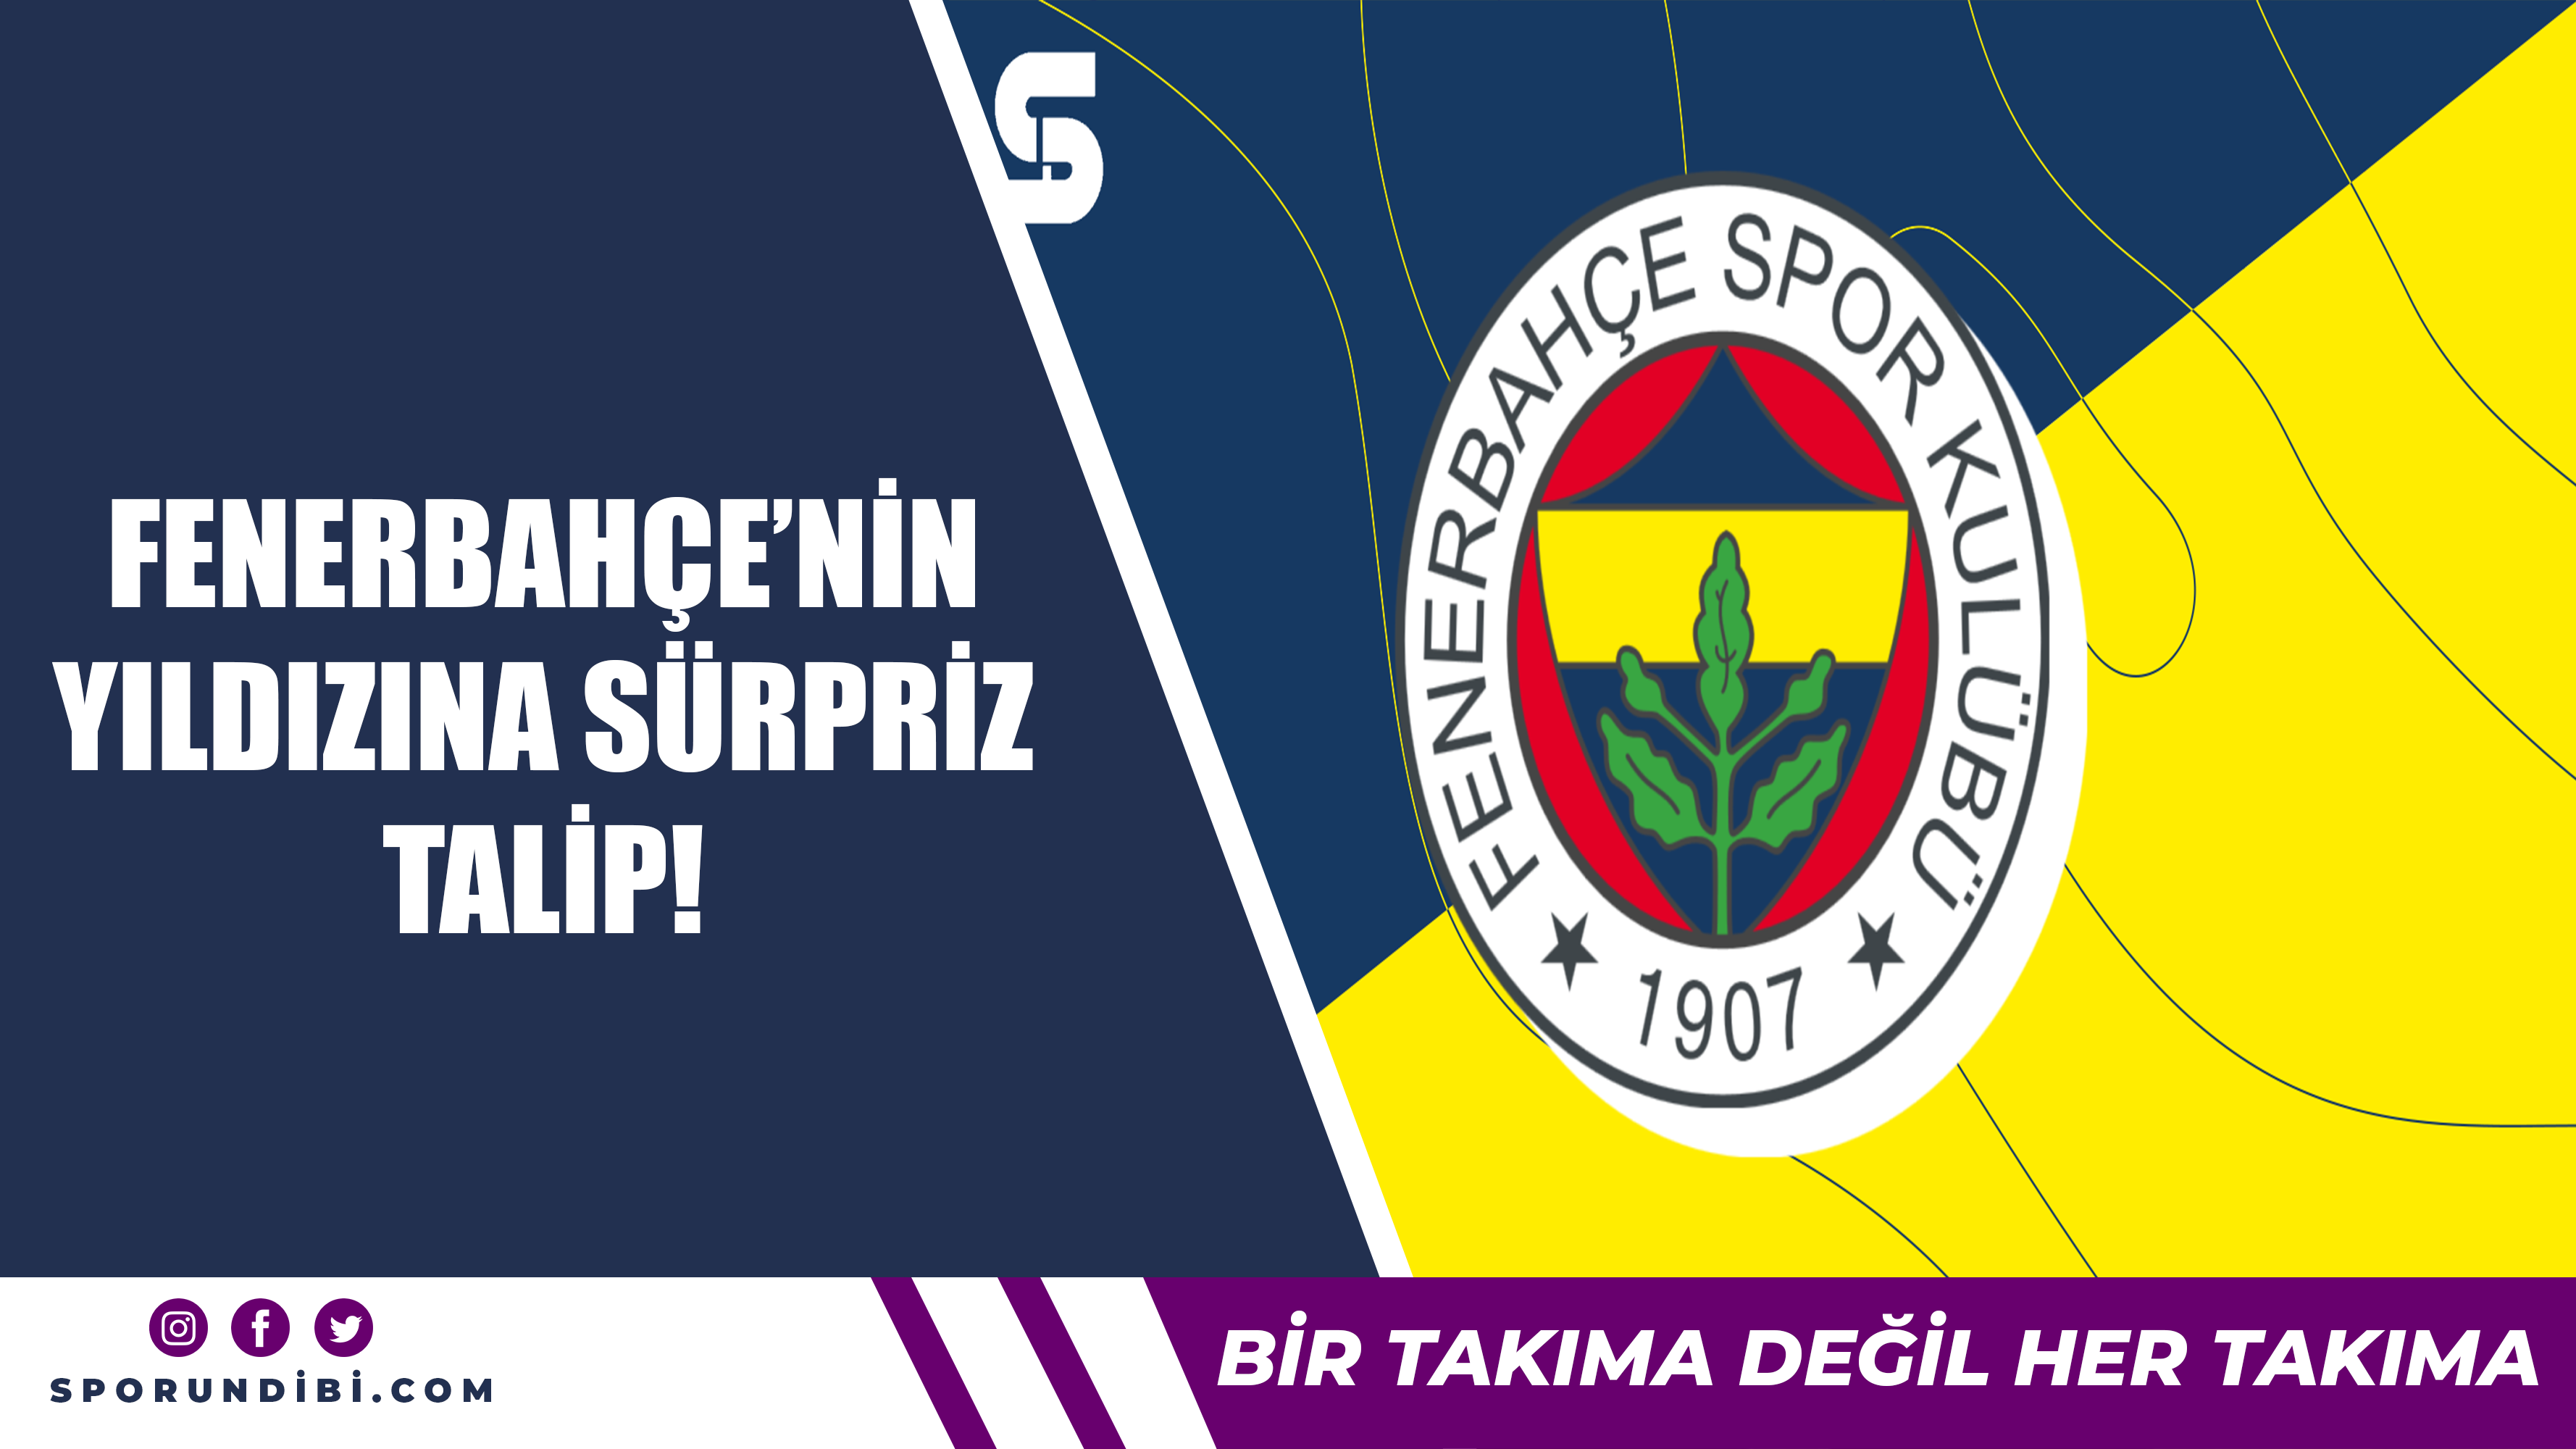 Fenerbahçe'nin yıldızına sürpriz talip!